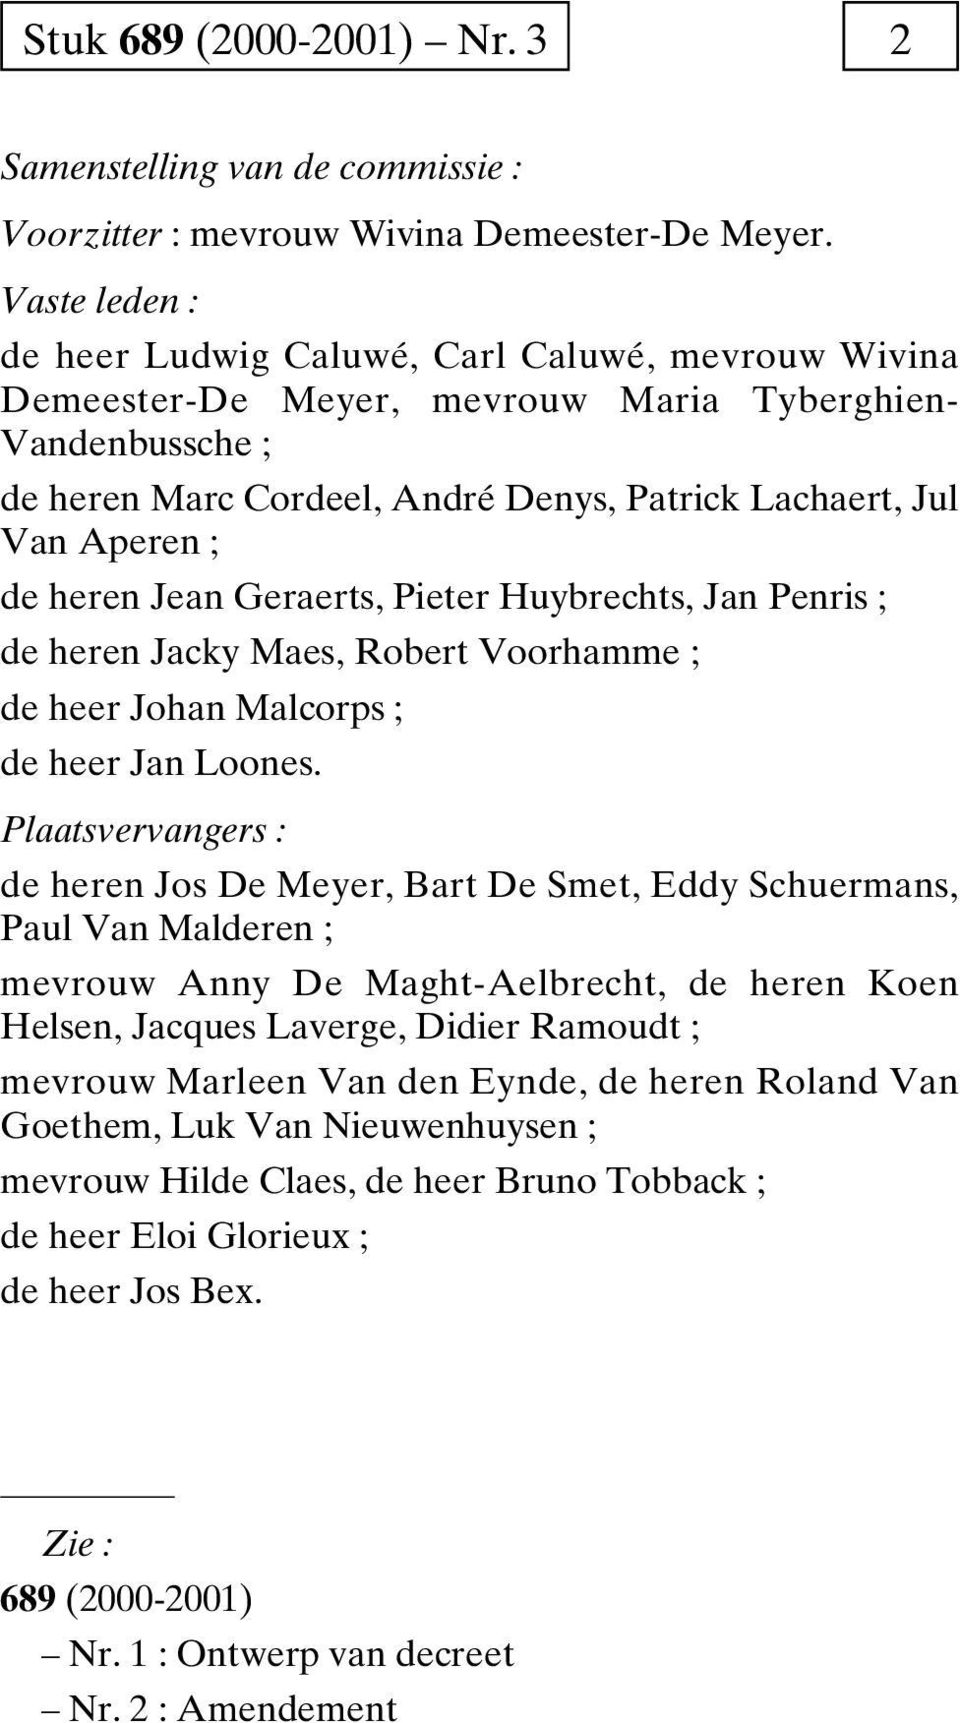 heren Jean Geraerts, Pieter Huybrechts, Jan Penris de heren Jacky Maes, Robert Voorhamme de heer Johan Malcorps de heer Jan Loones.